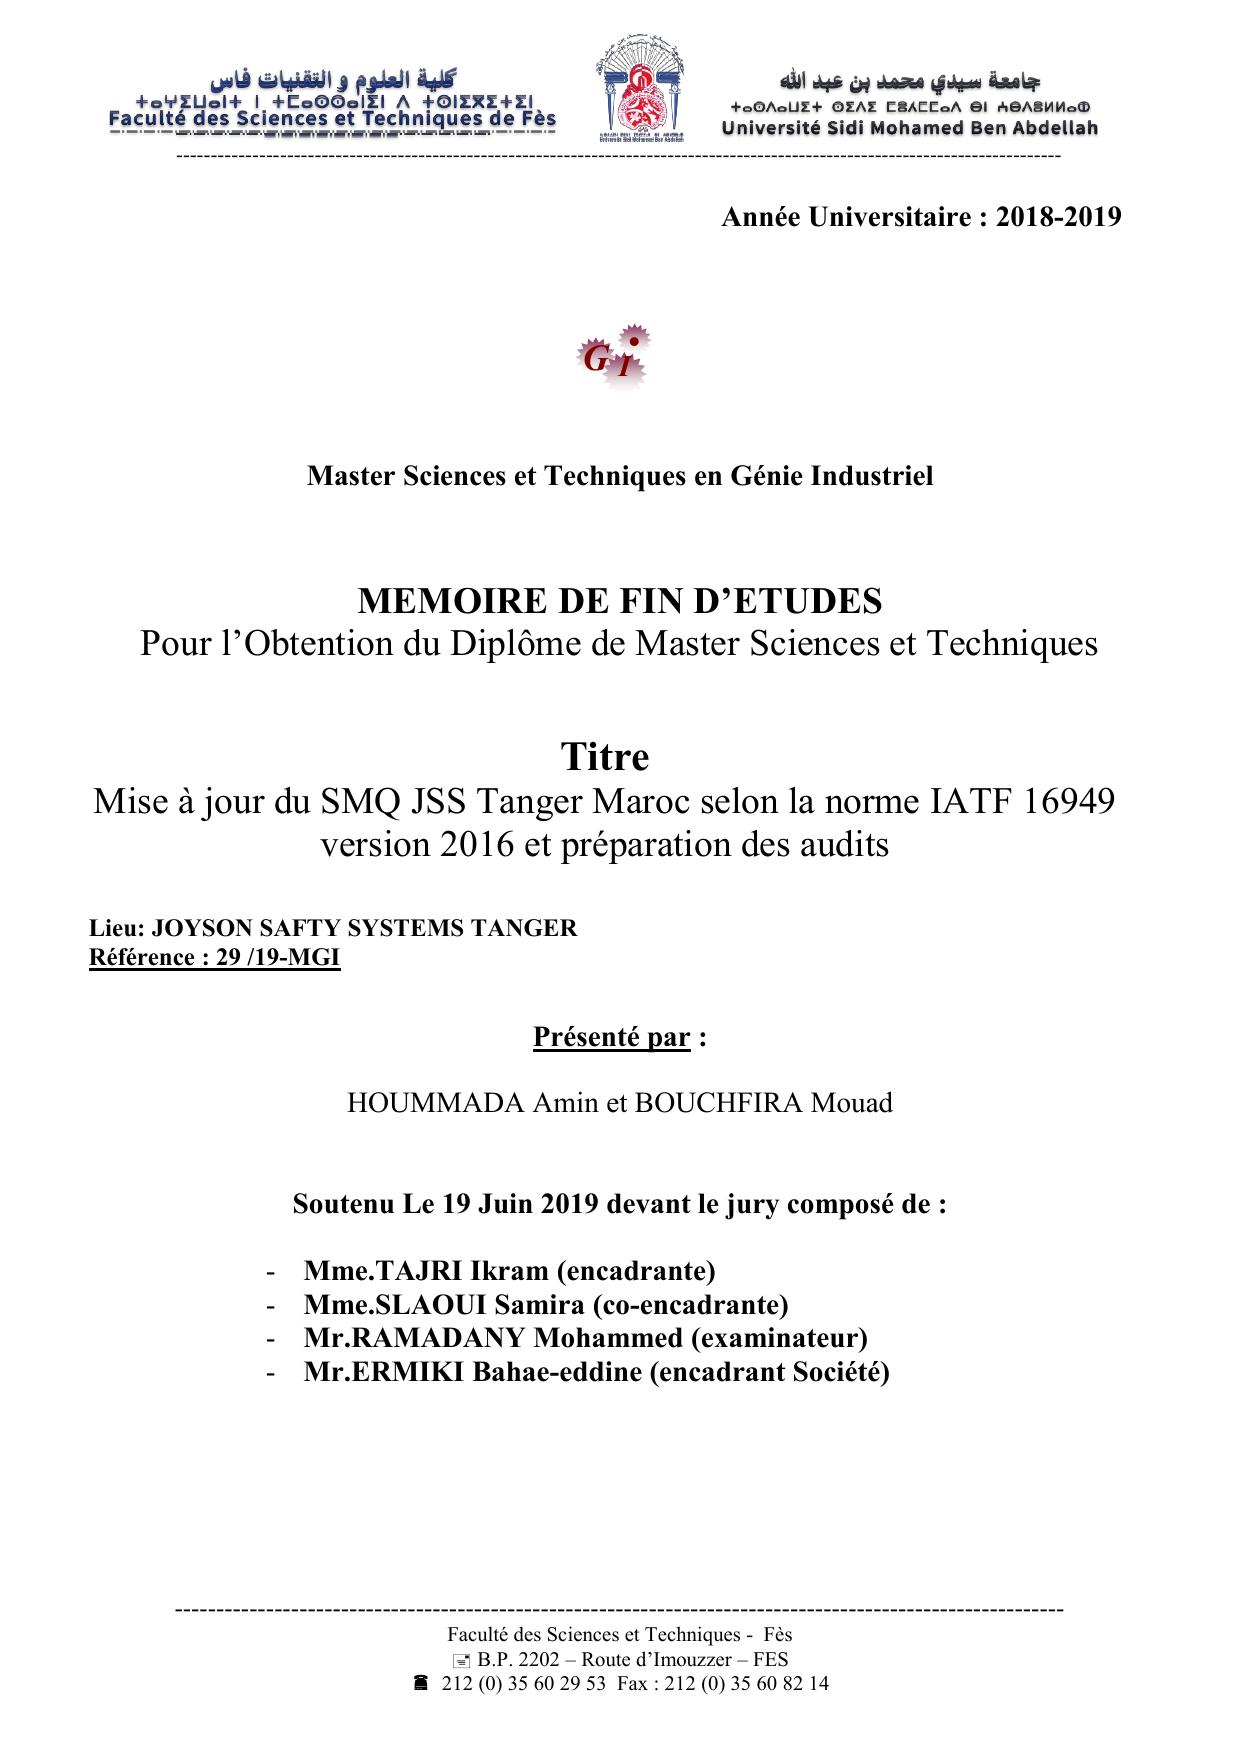 Mise à jour du SMQ JSS Tanger Maroc selon la norme IATF 16949 version 2016 et préparation des audits